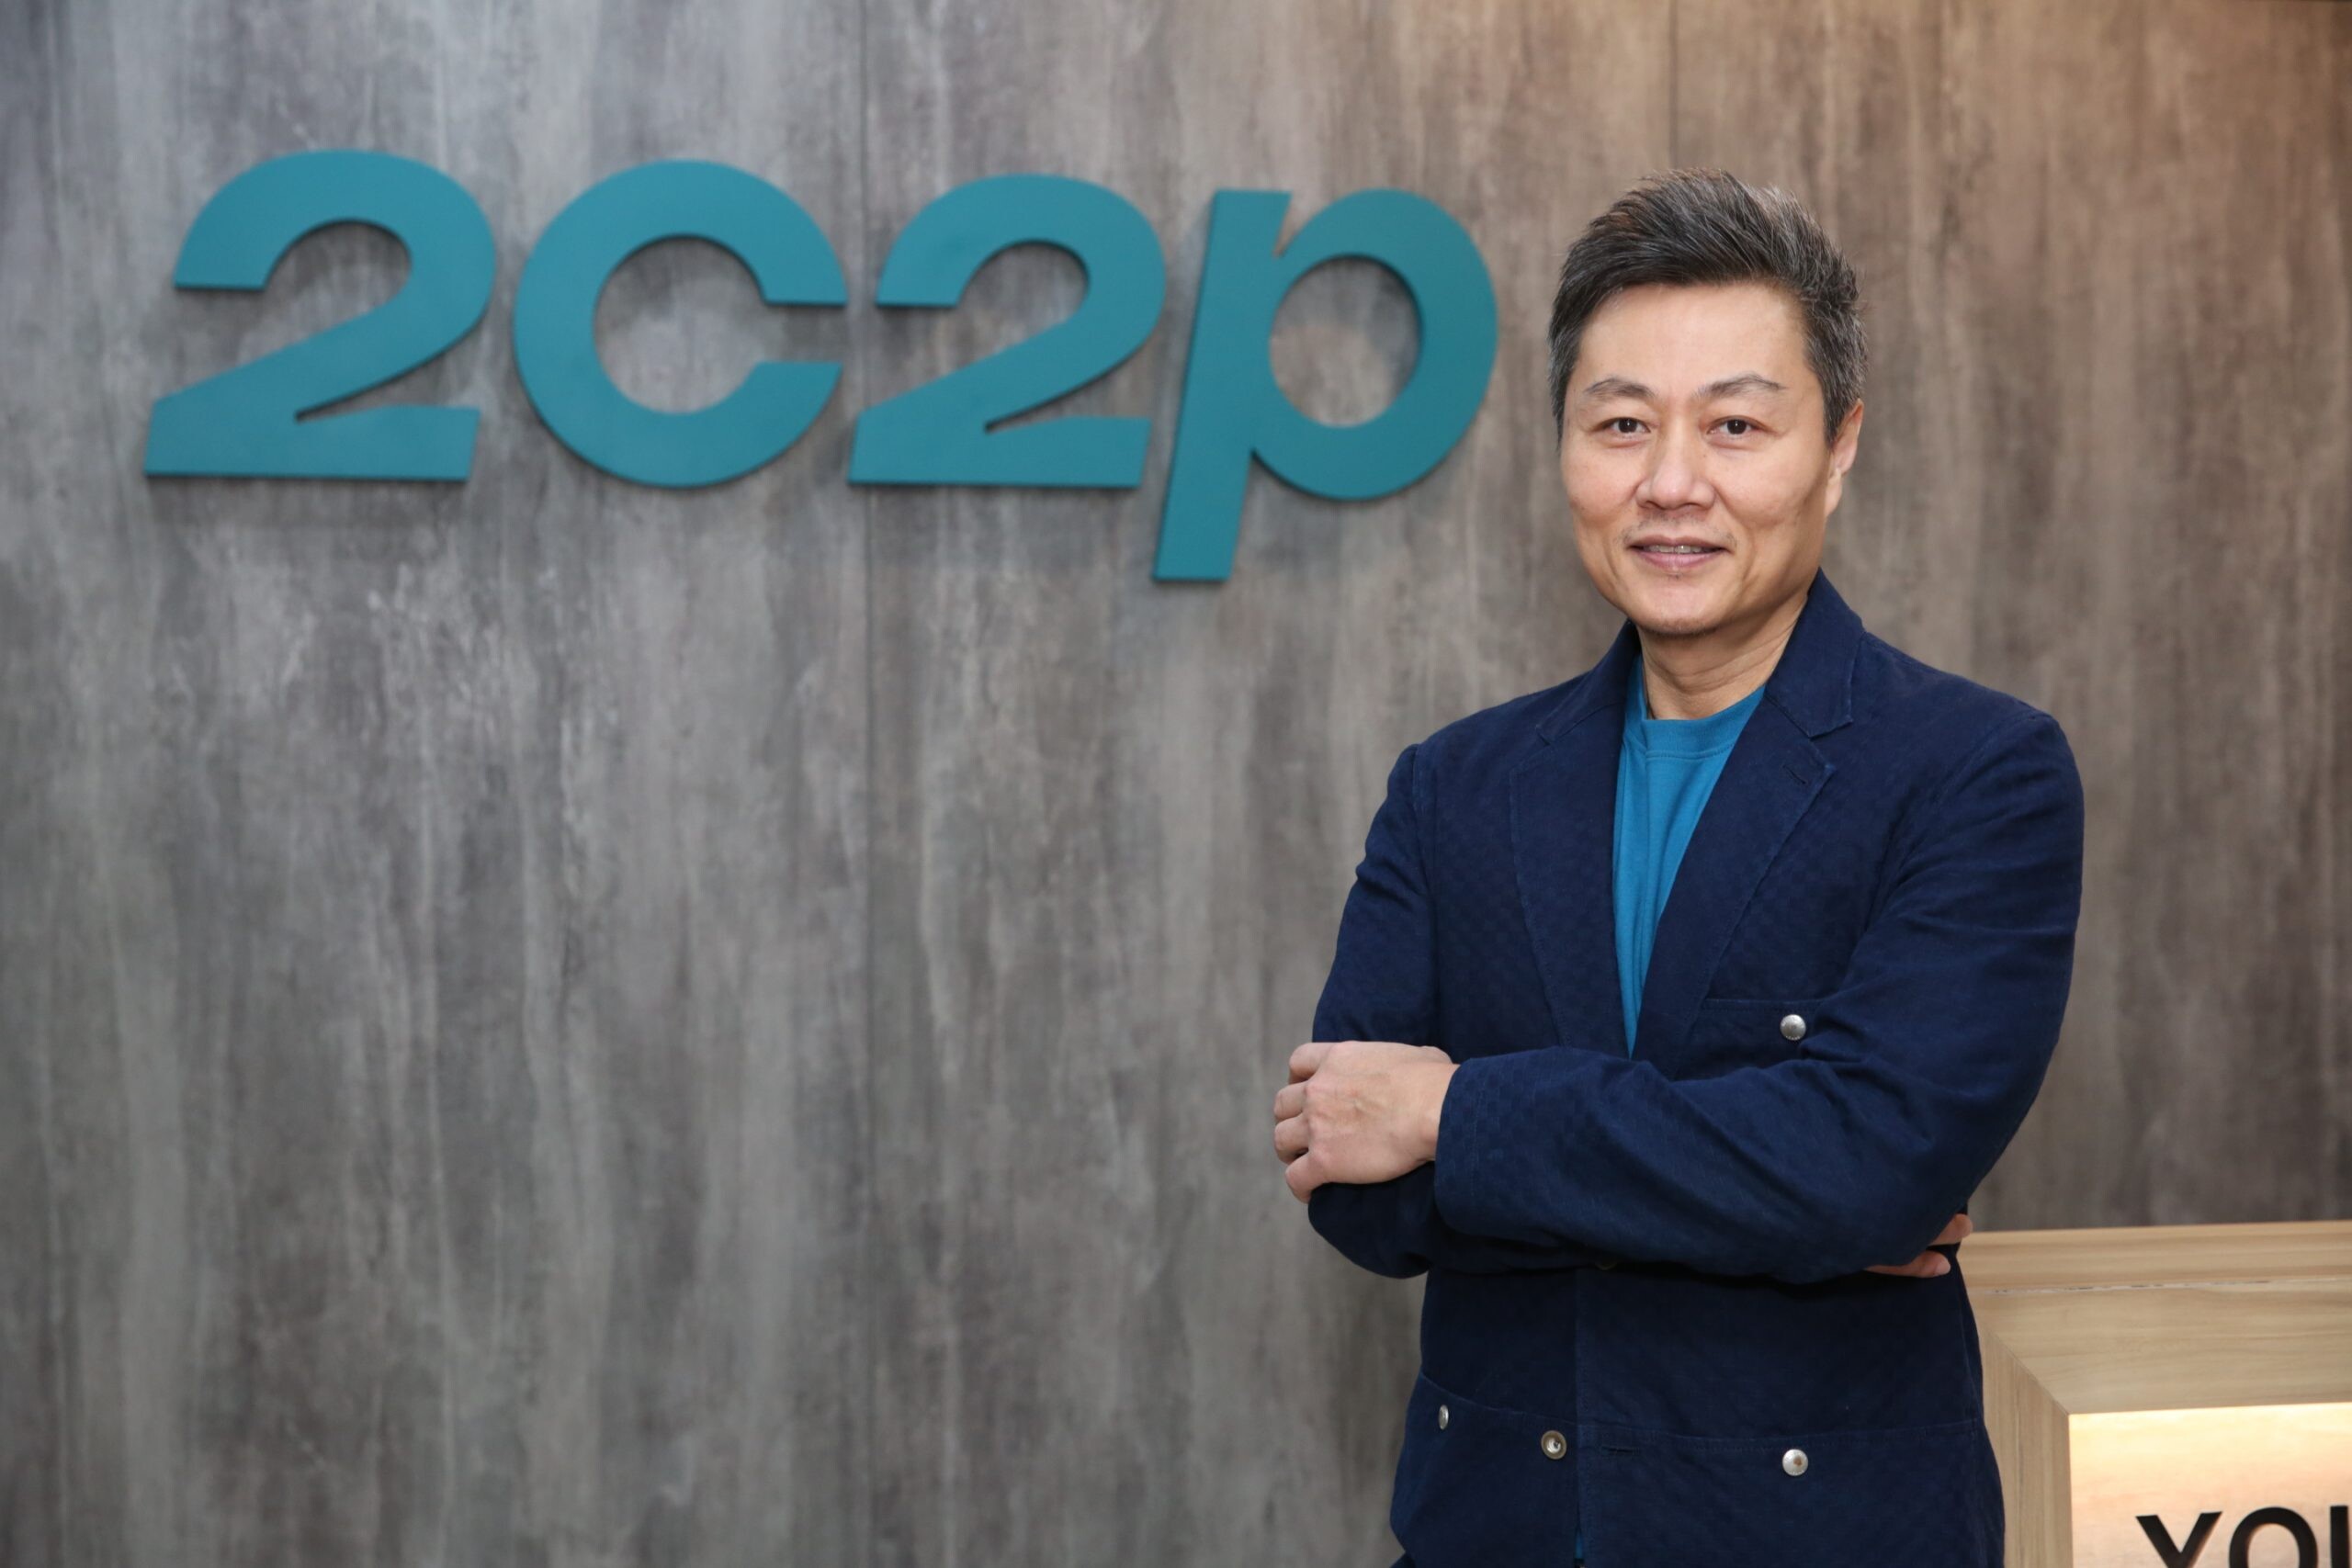 2C2P และ UnionPay International เปิดตัวเทคโนโลยีการตรวจสอบการชำระเงินออนไลน์ รุ่นใหม่ในเอเชียตะวันออกเฉียงใต้และฮ่องกง